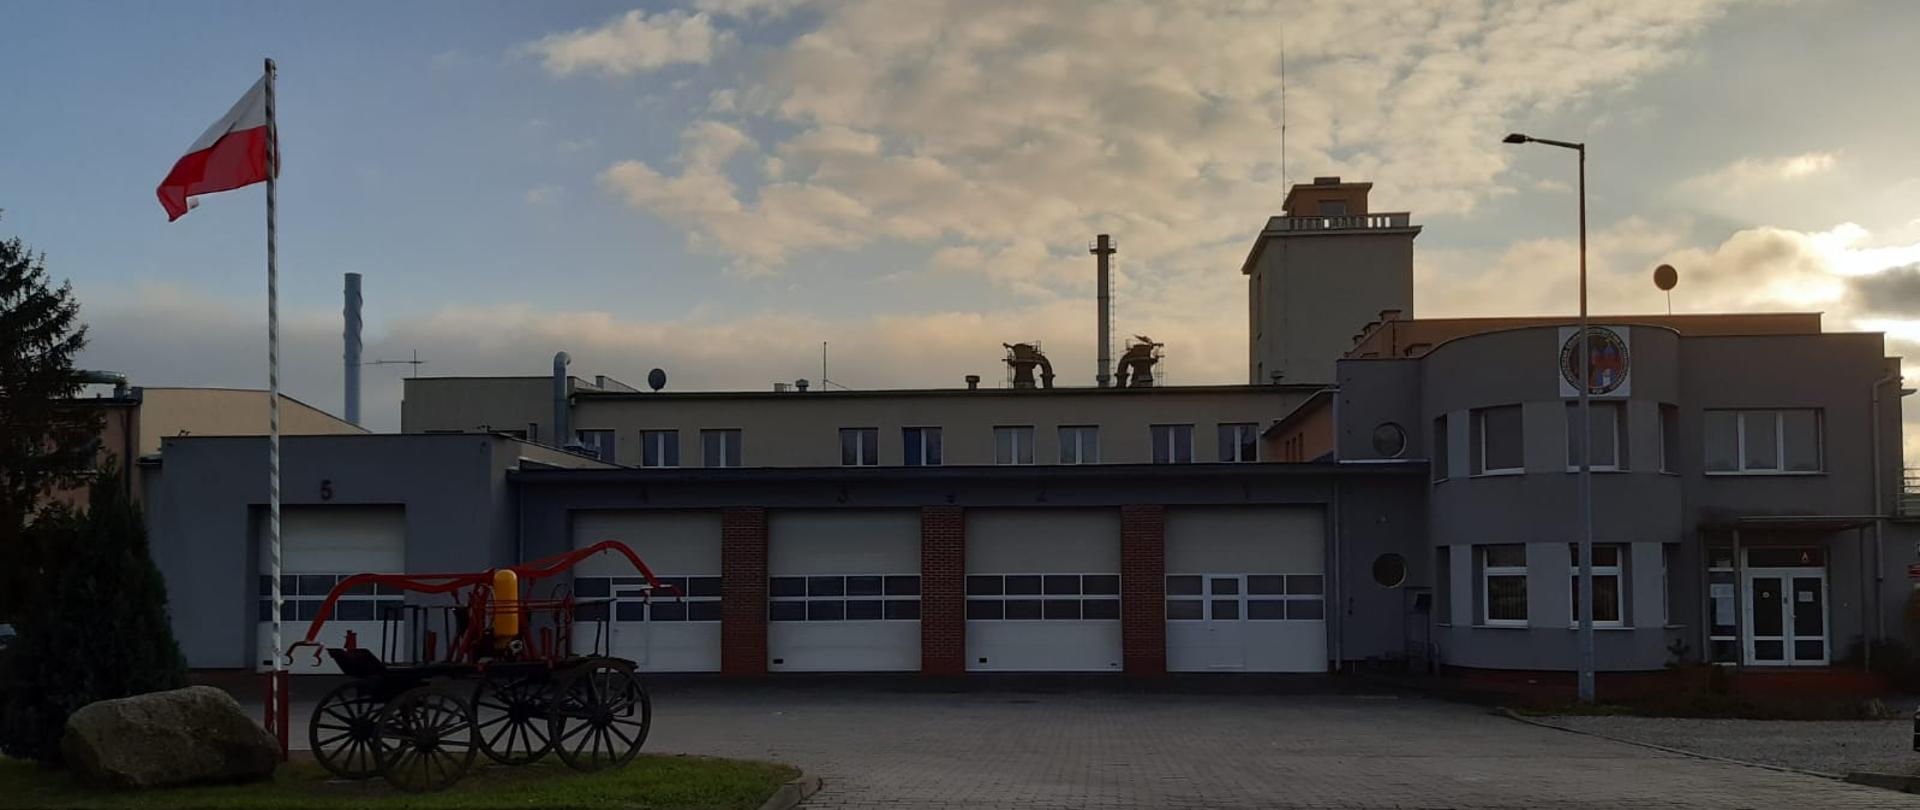 Budynek Jednostki Ratowniczo-Gaśniczej nr 3 w Bydgoszczy, elewacja frontowa.